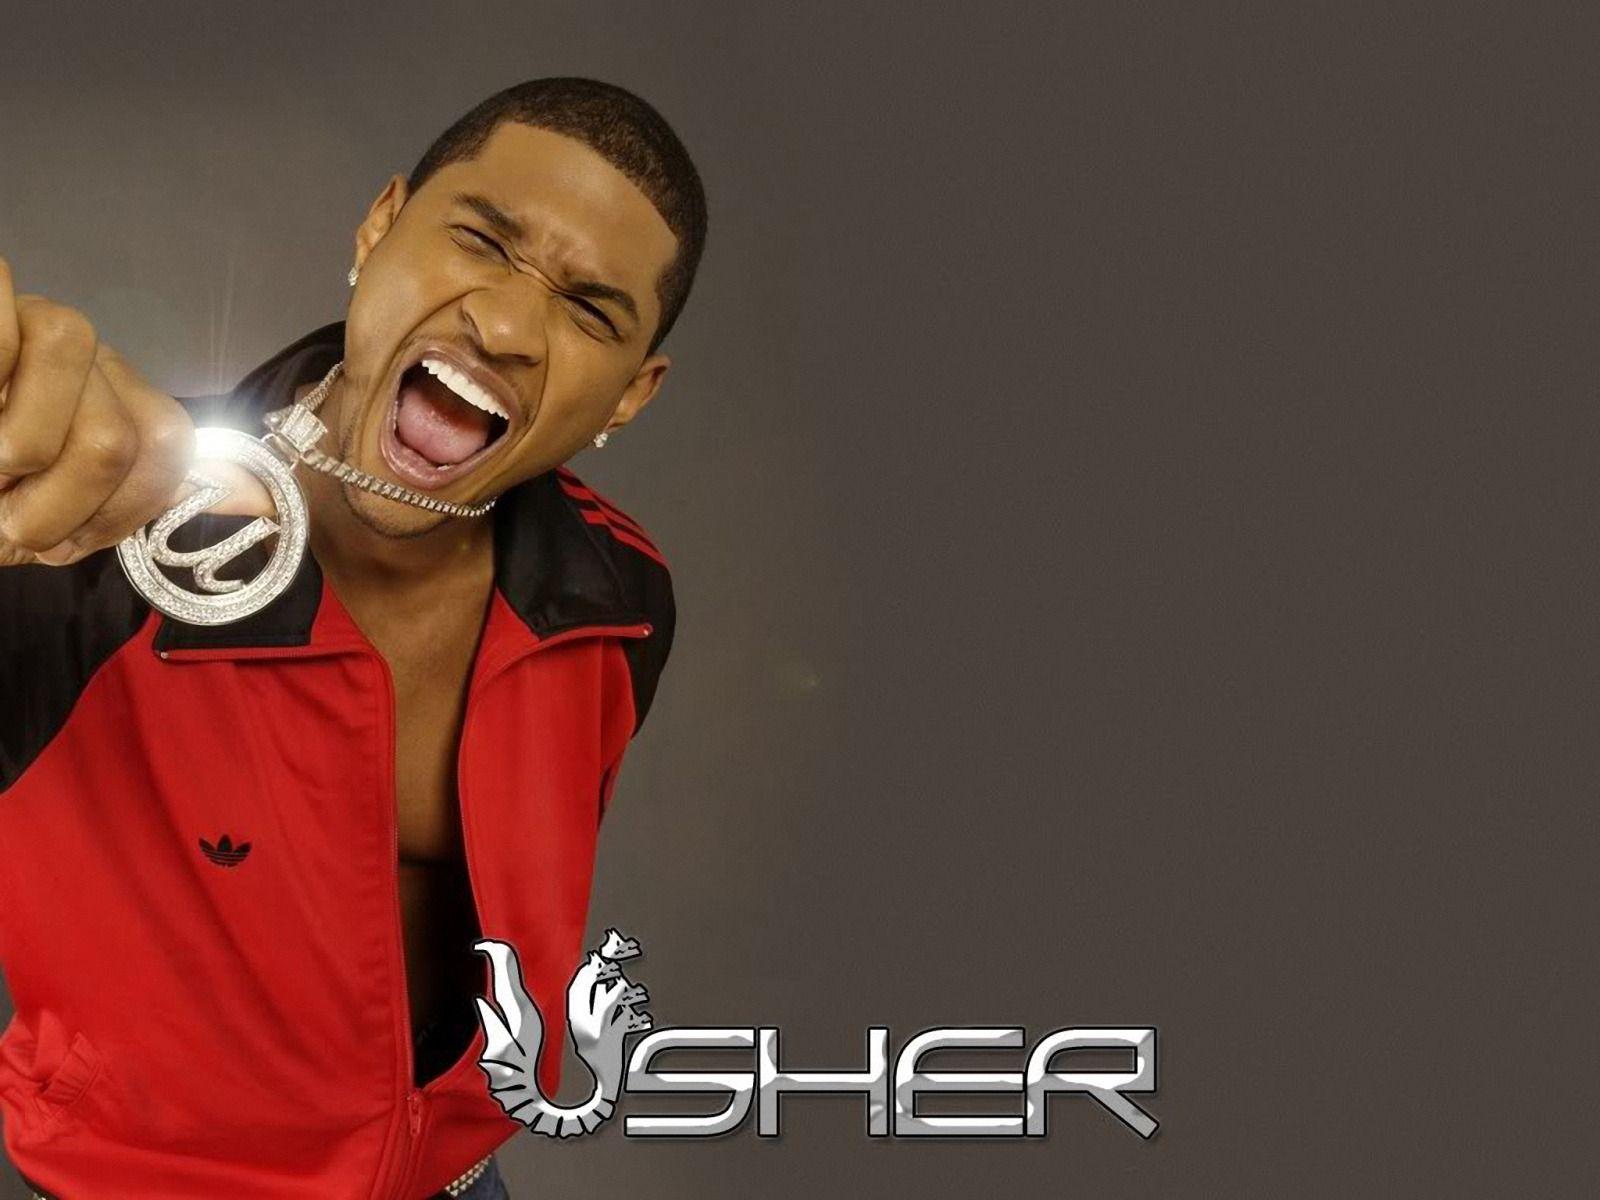 Usher yeah up beat dance type music rb artist reign HD wallpaper   Peakpx